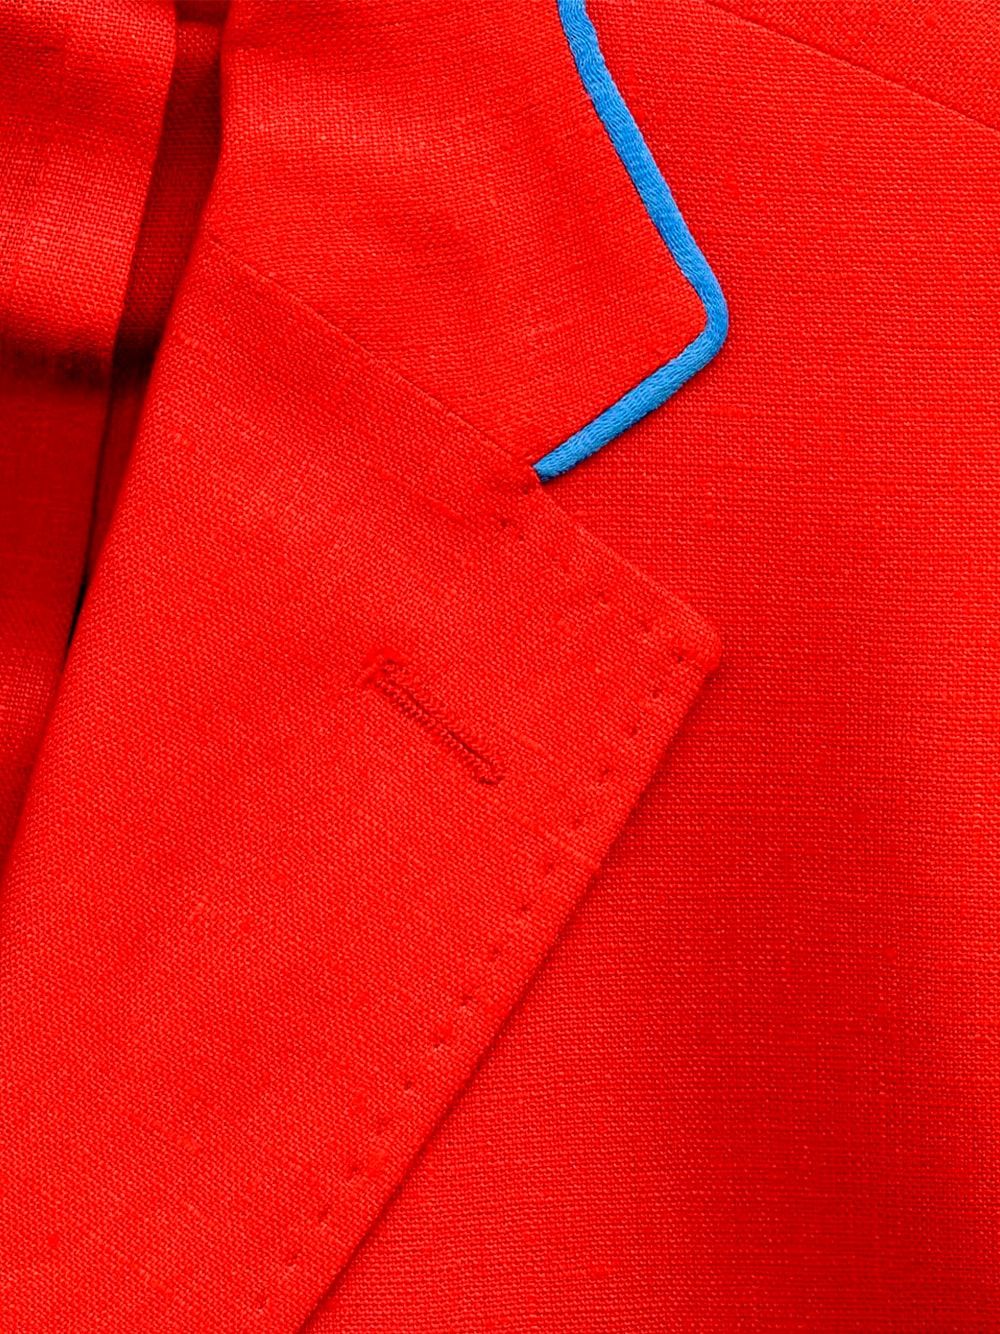 Red Suit | Nair Xavier